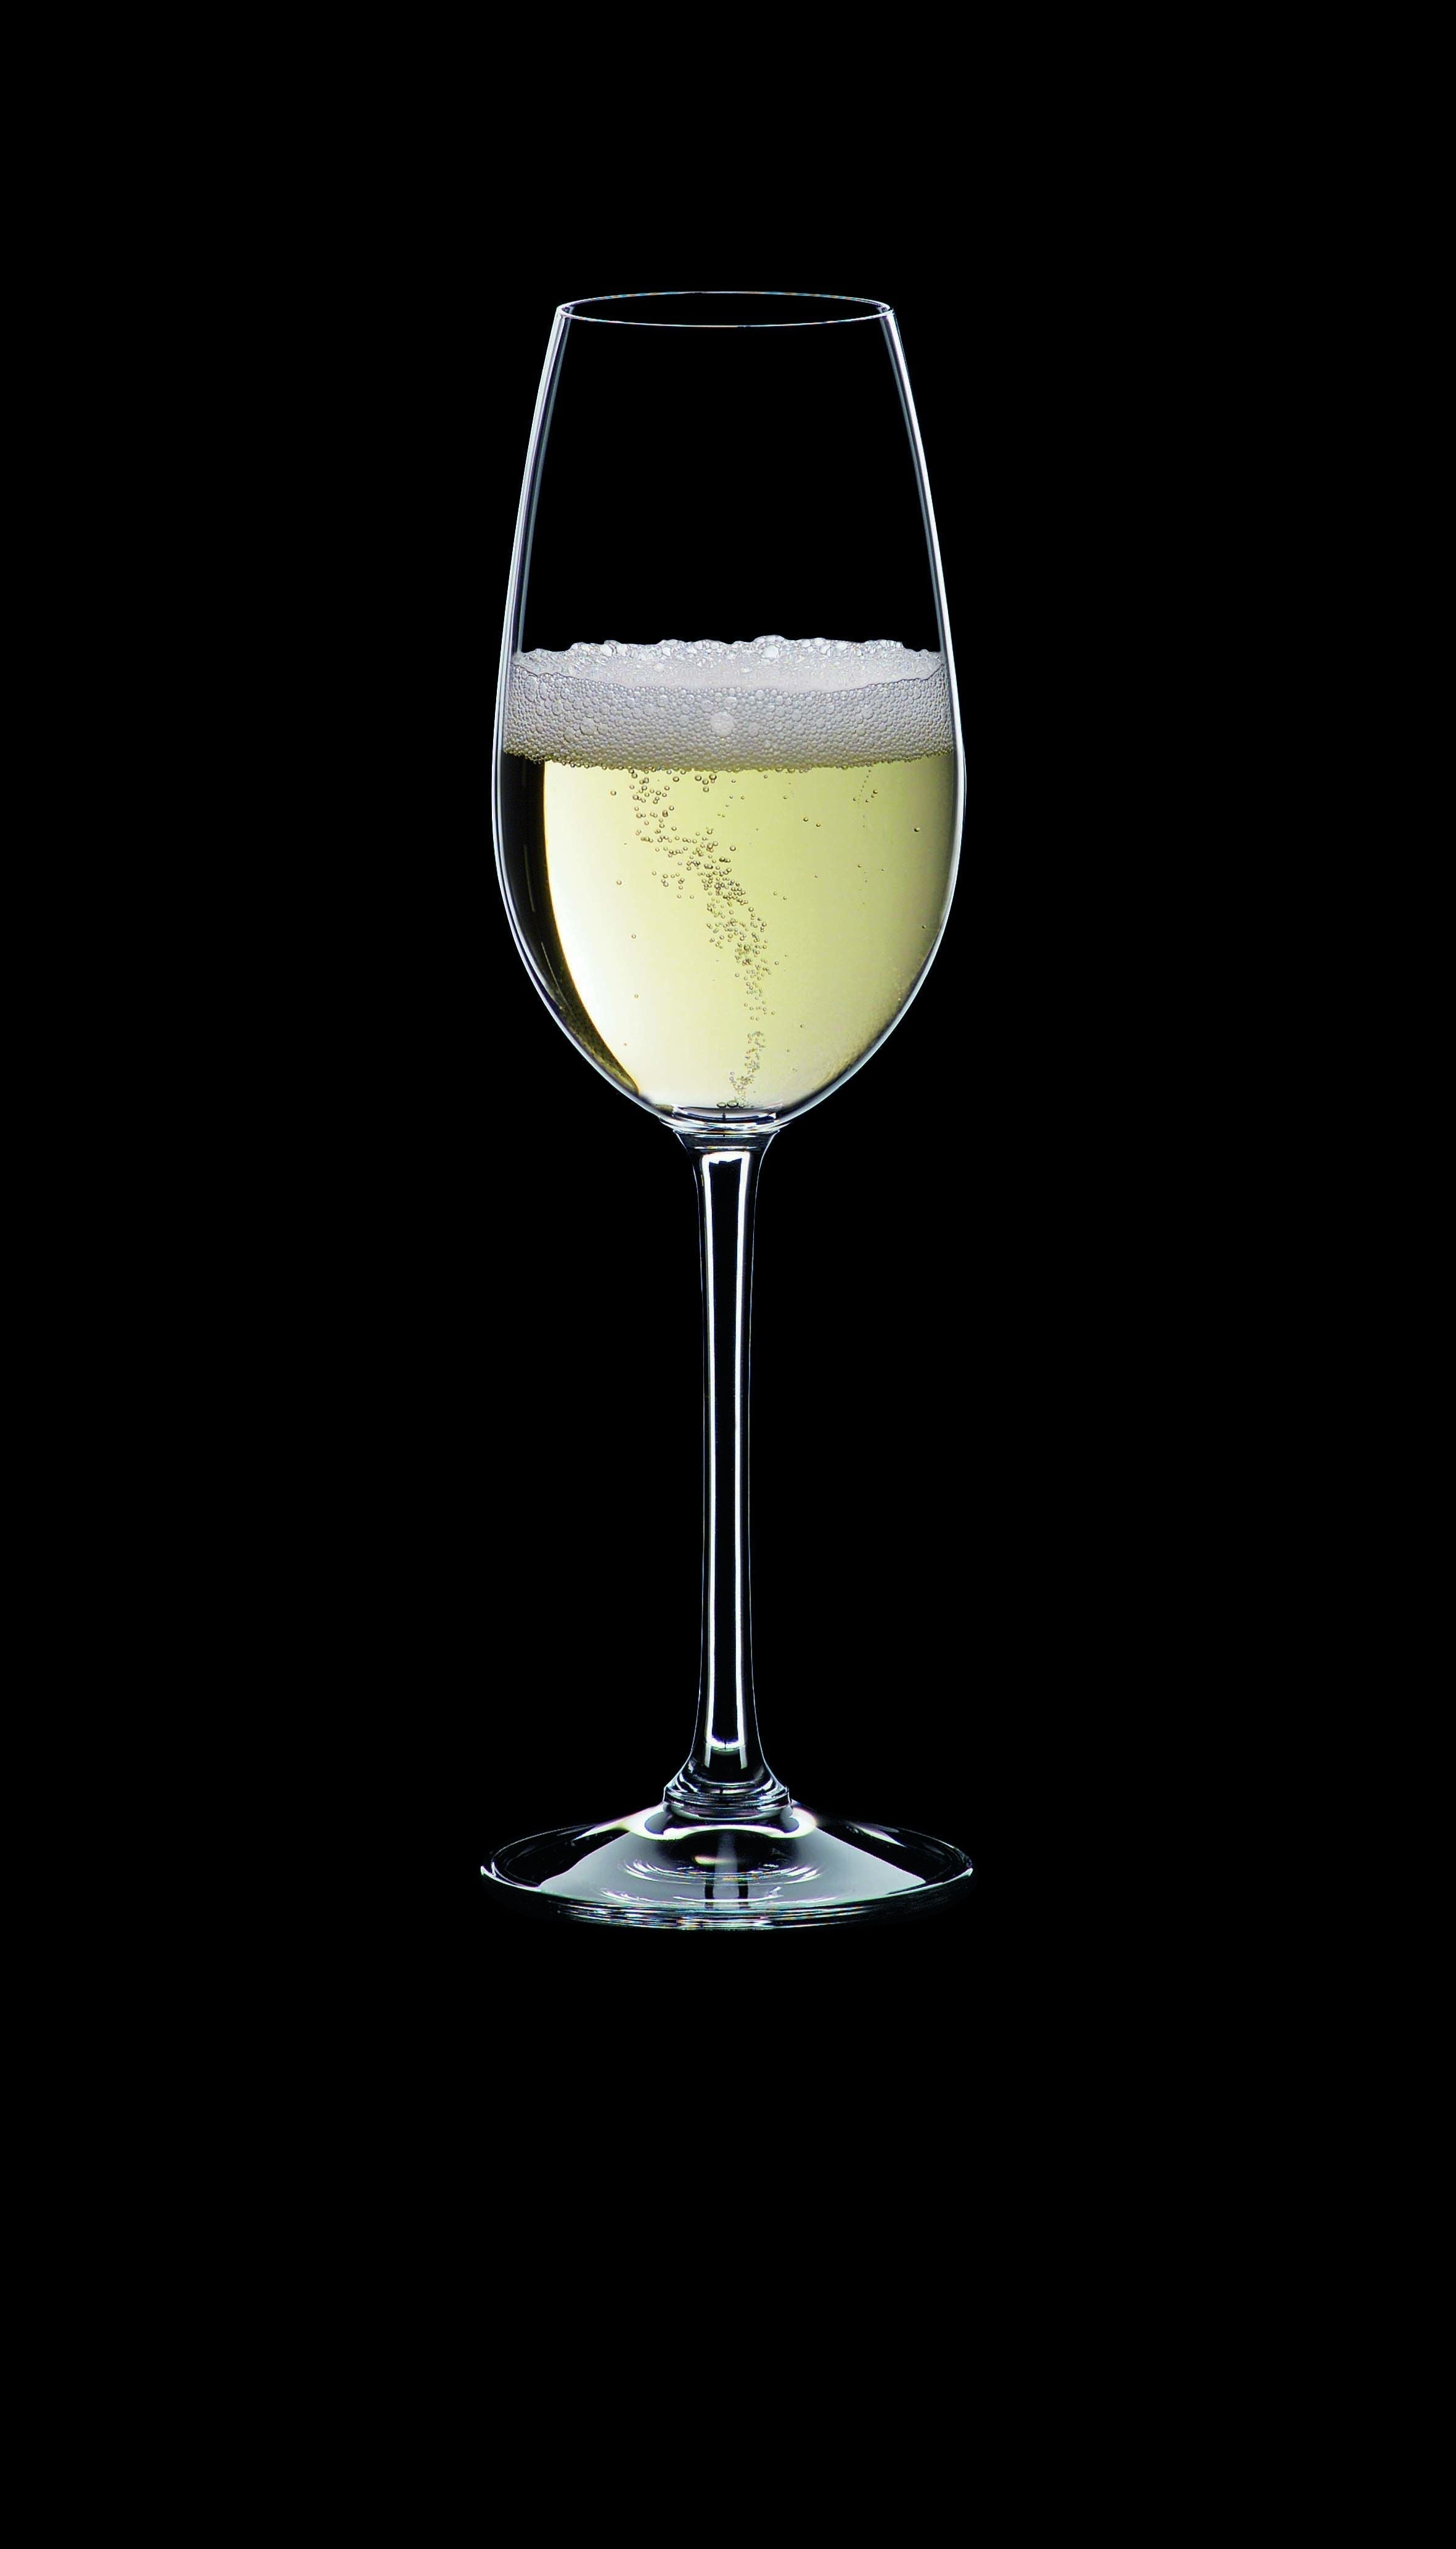 Nachtmann Vi Vino Champagne Glass 260 Ml, Set Of 4